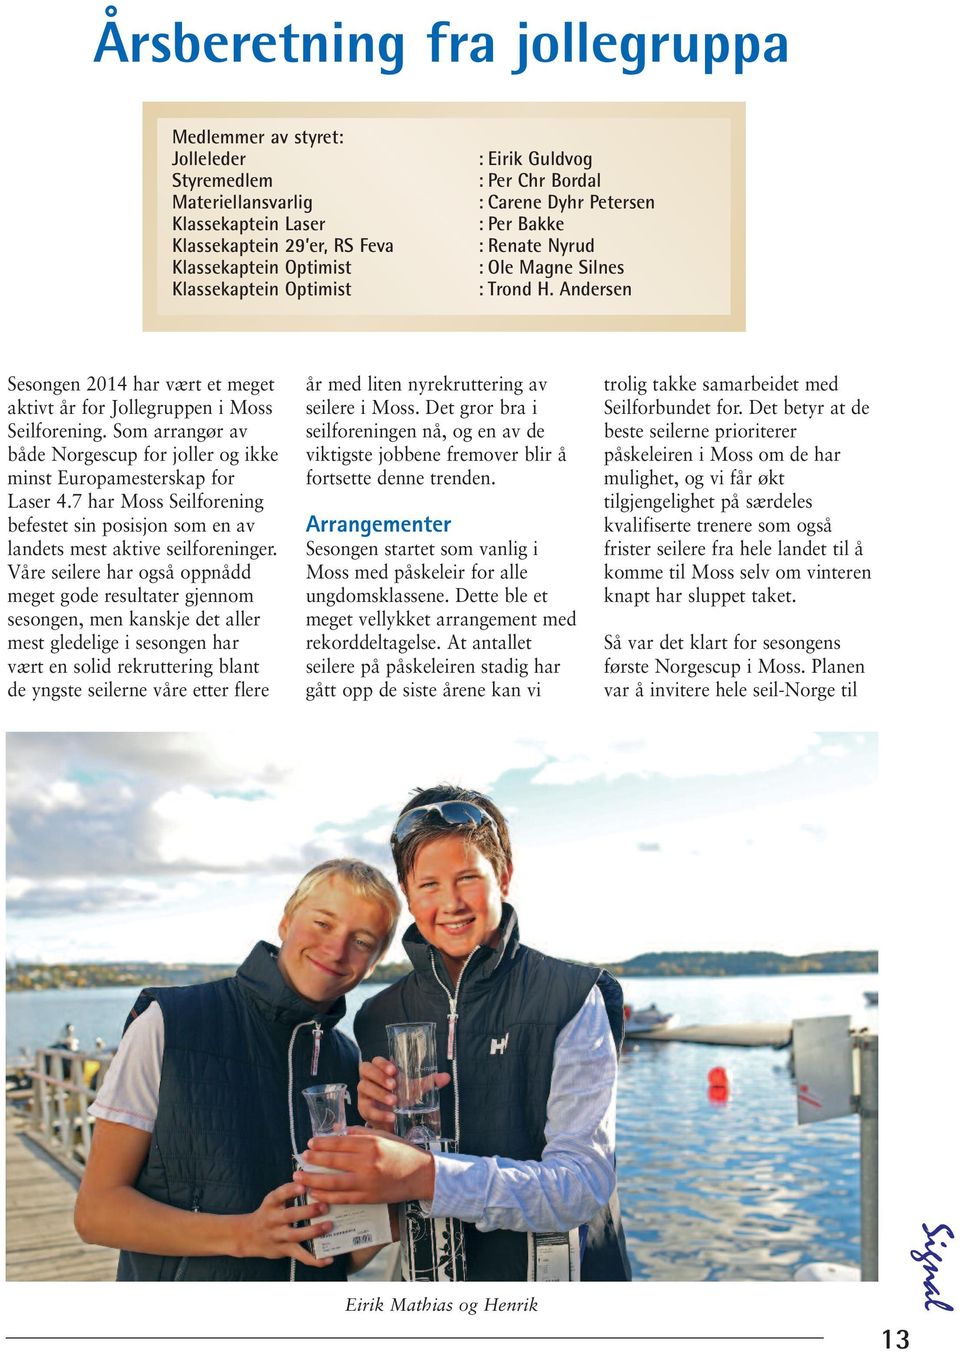 Som arrangør av både Norgescup for joller og ikke minst Europamesterskap for Laser 4.7 har Moss Seilforening befestet sin posisjon som en av landets mest aktive seilforeninger.